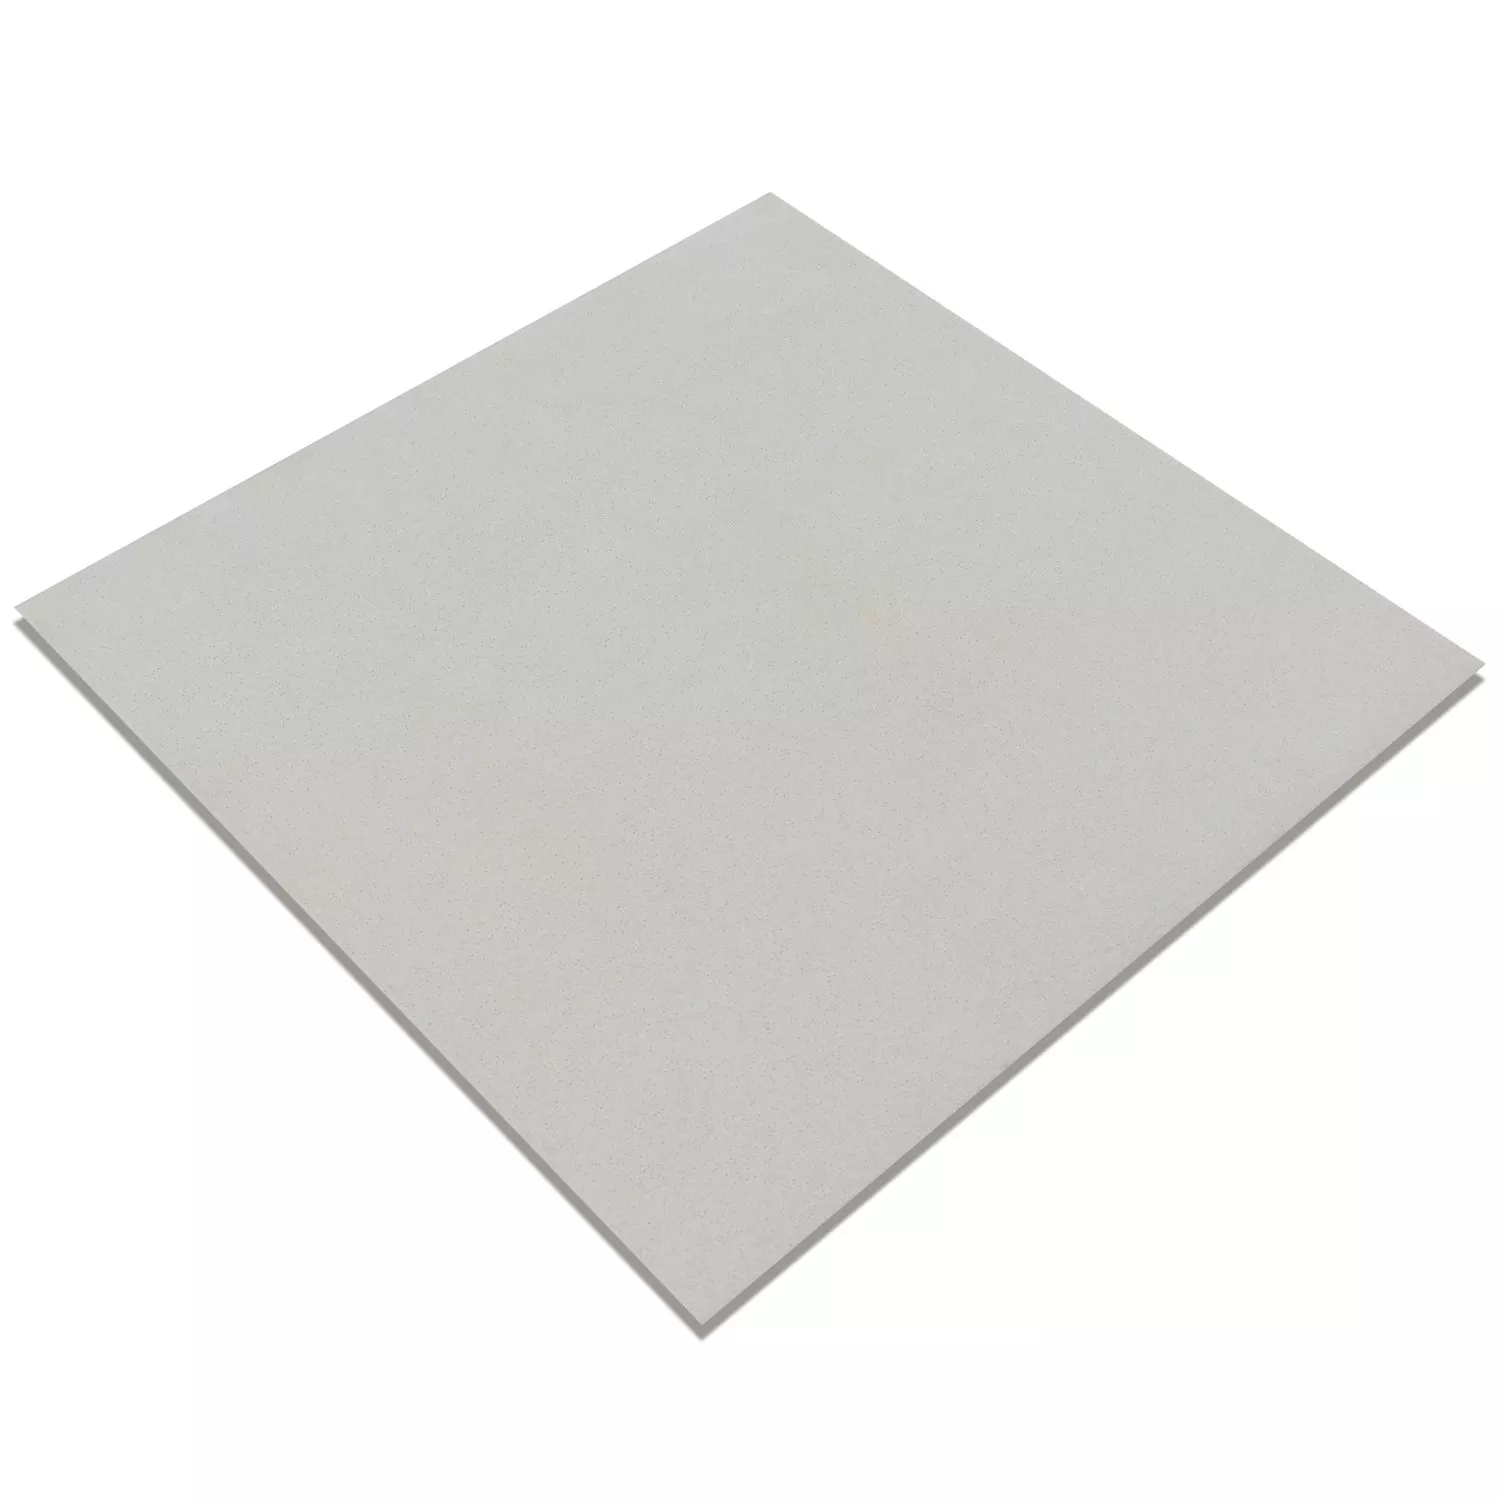 Cement Tiles Optic Gotik Basic Tile White 22,3x22,3cm